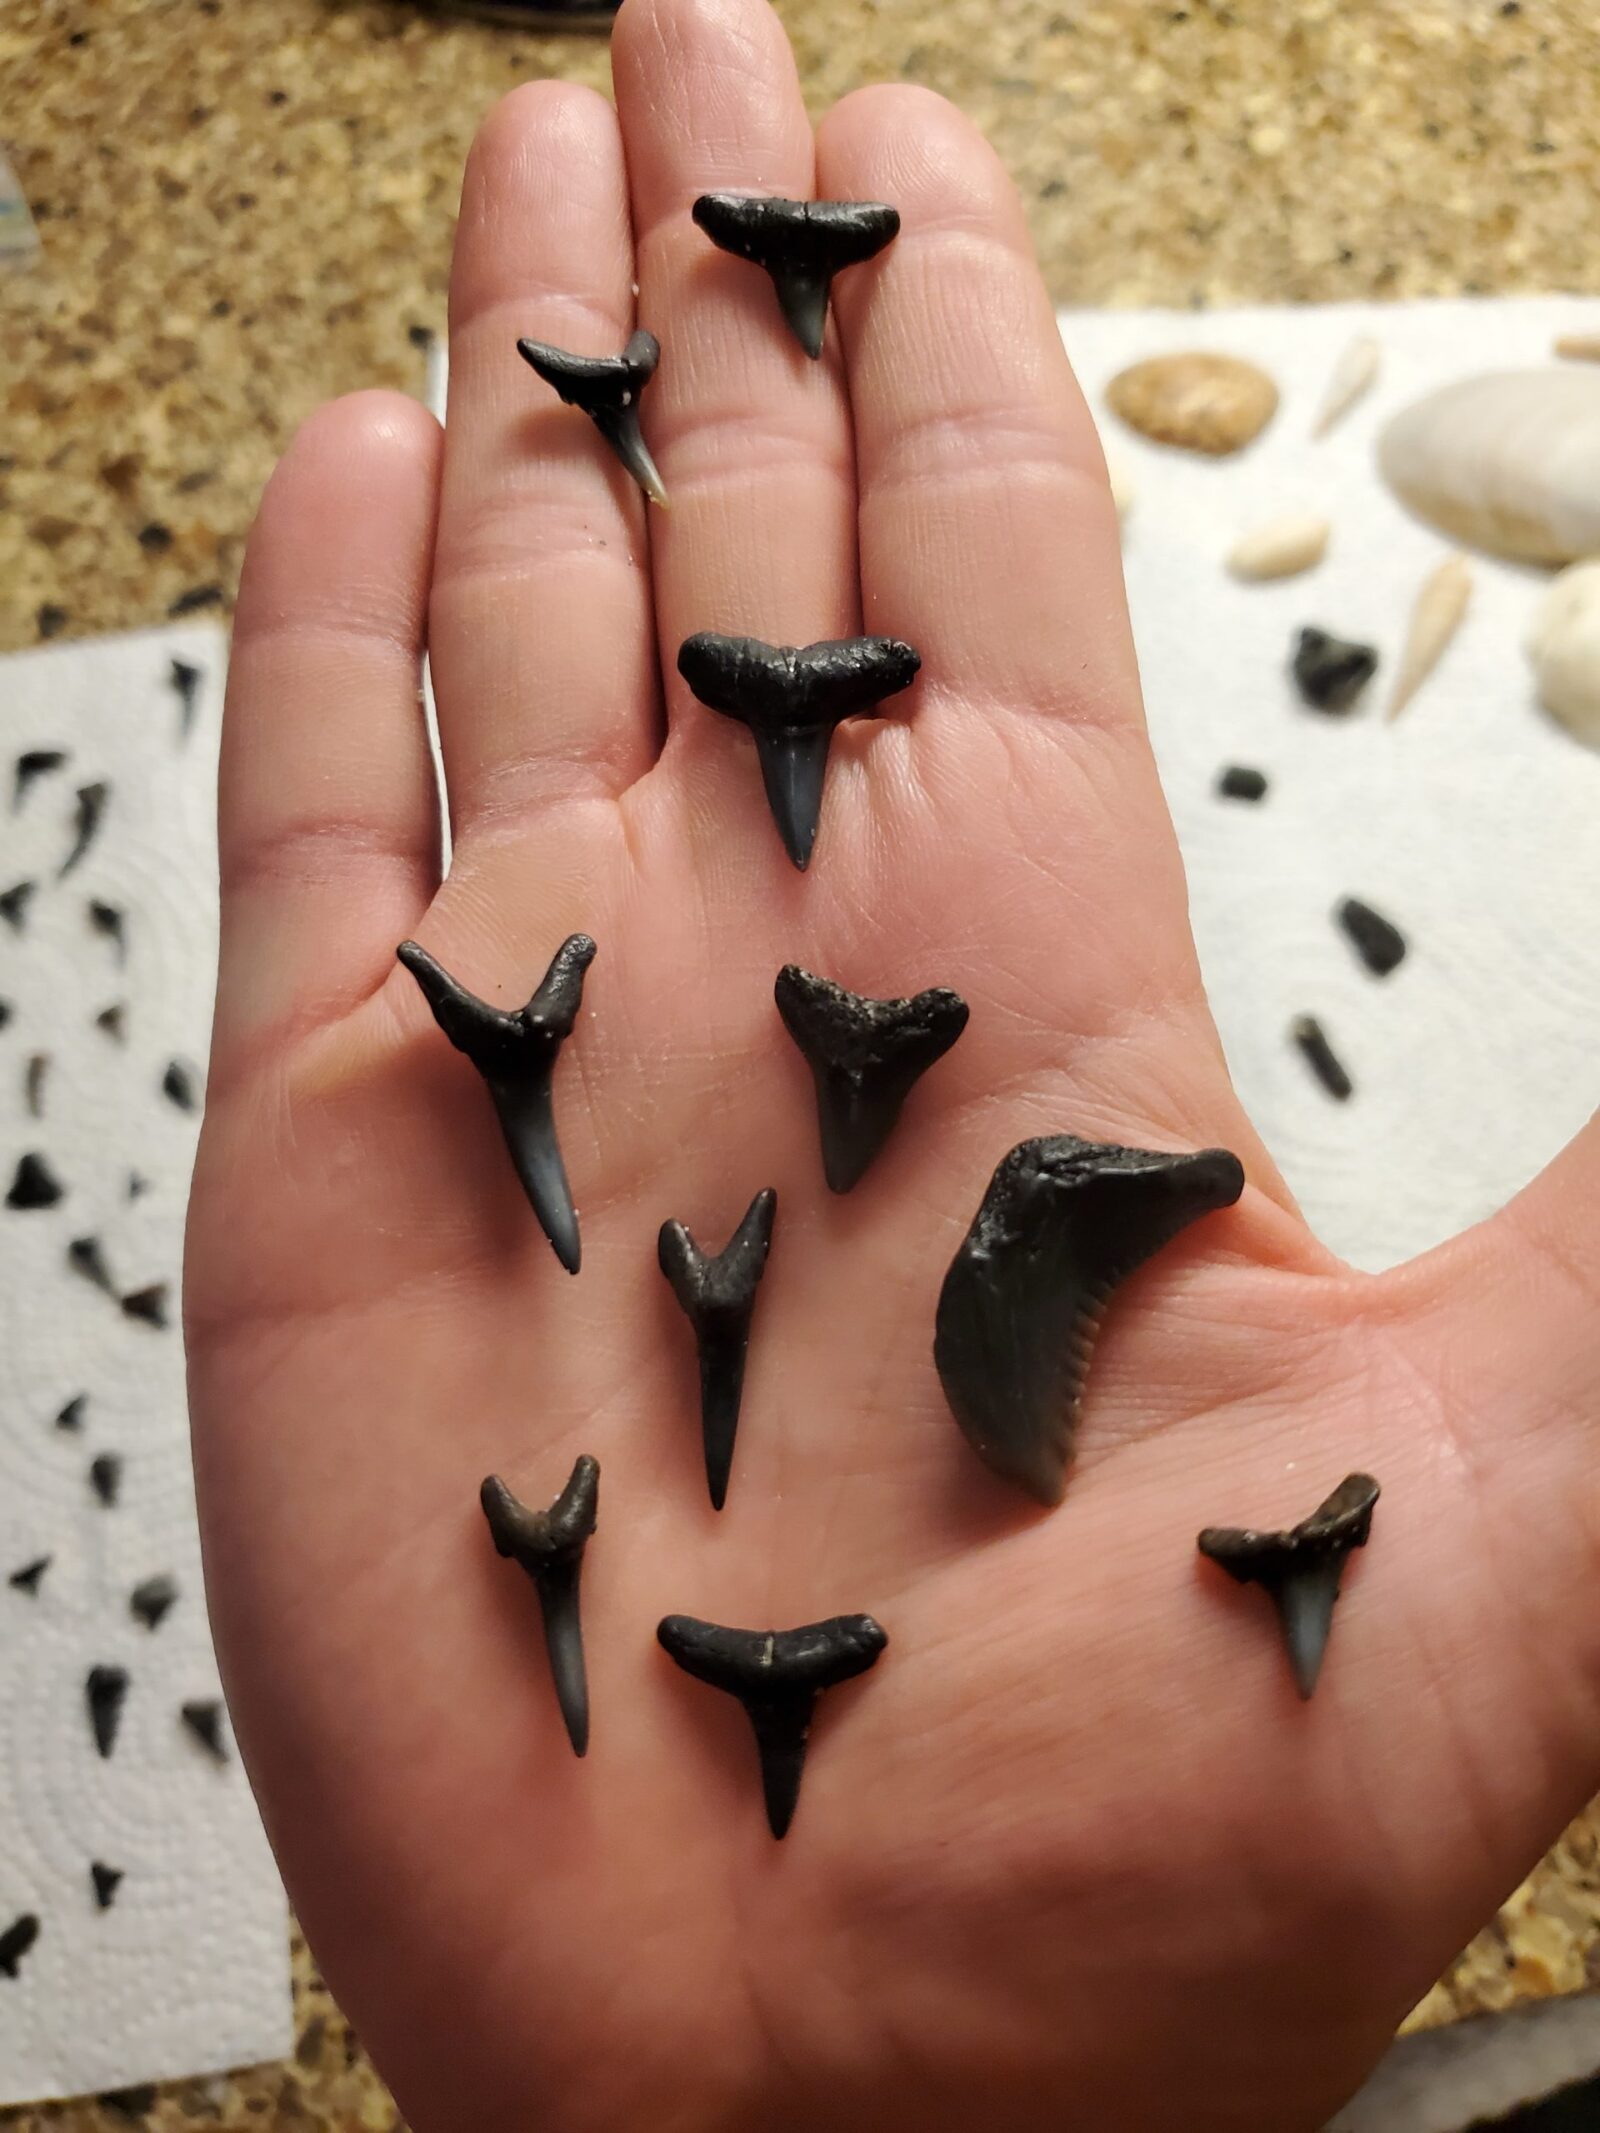 shark teeth found on Venice beach